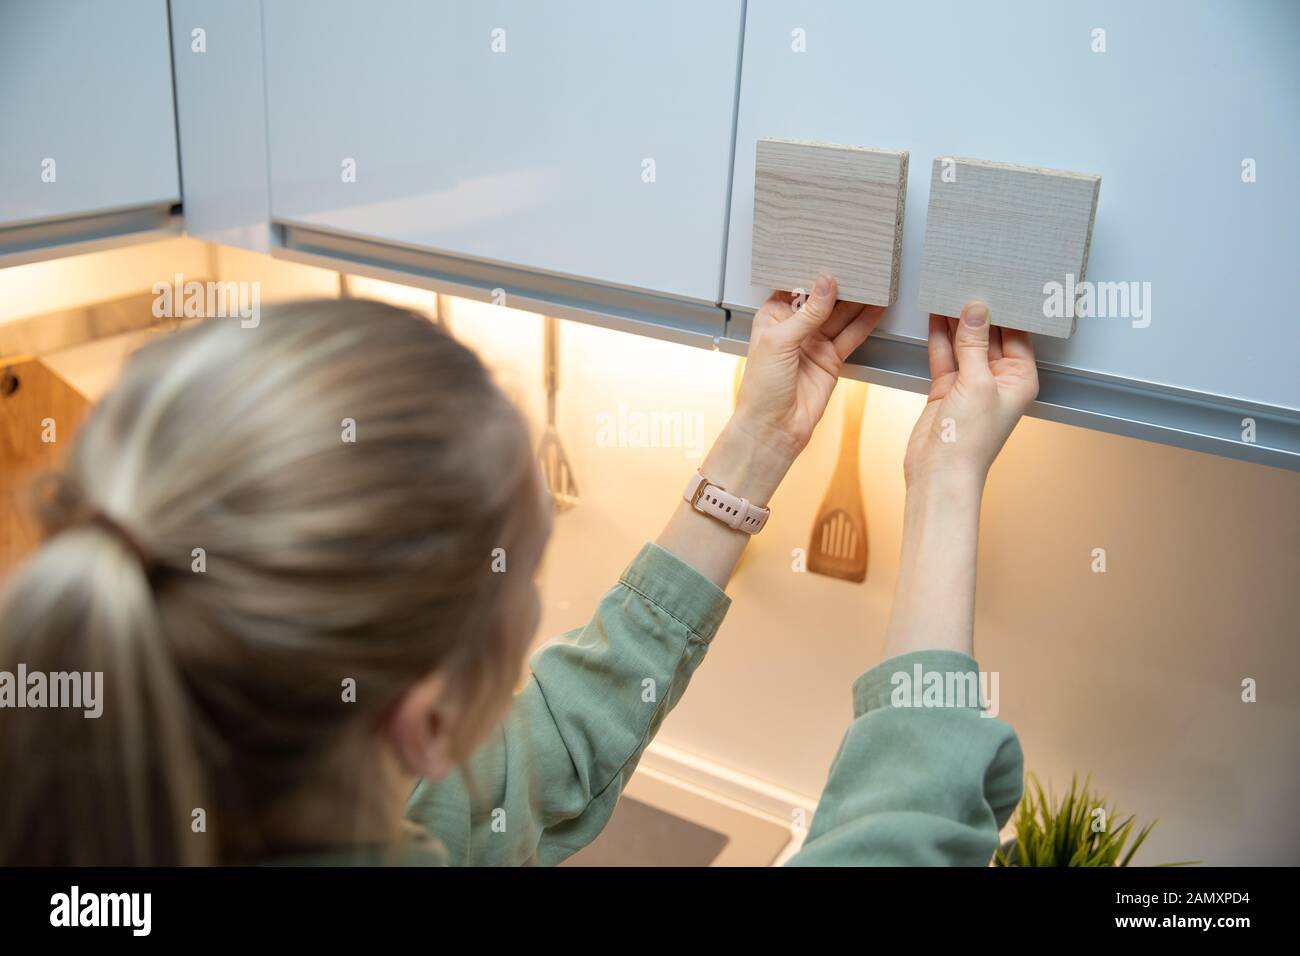 donna che sceglie i materiali del mobile della cucina dai campioni laminati Foto Stock